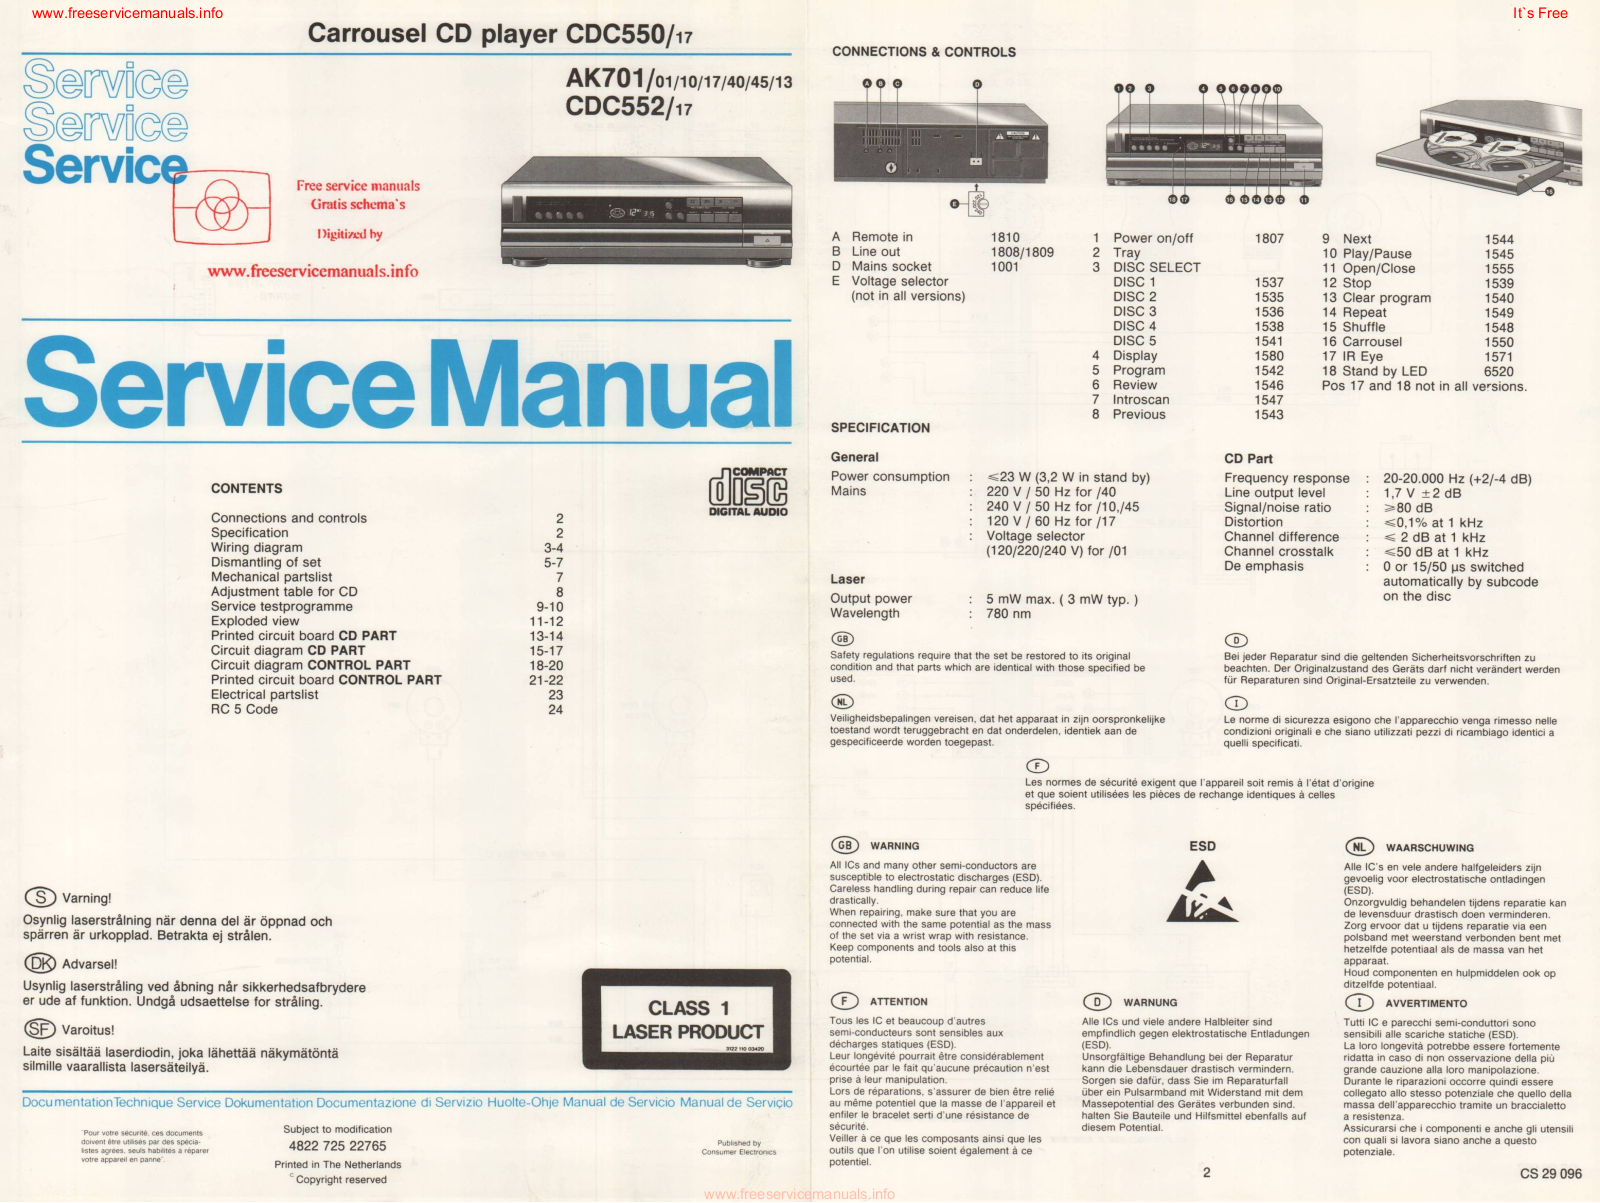 Philips CDC550-17, AK701-01, AK701-10, AK701-17, AK701-40 Service Manual